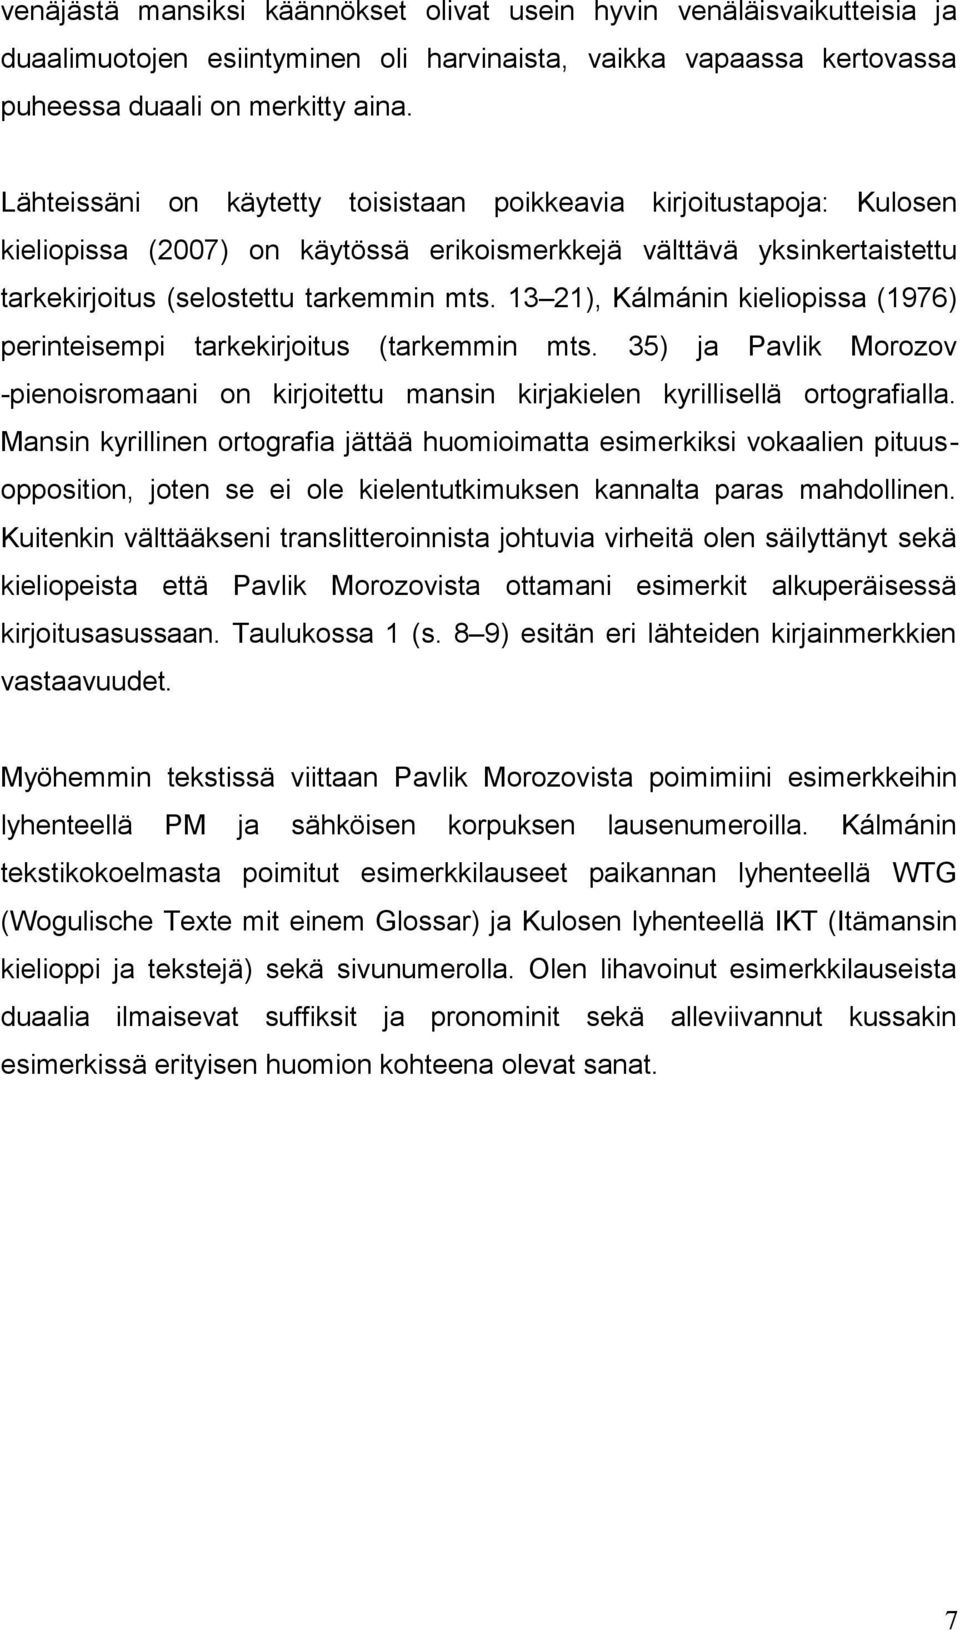 13 21), Kálmánin kieliopissa (1976) perinteisempi tarkekirjoitus (tarkemmin mts. 35) ja Pavlik Morozov -pienoisromaani on kirjoitettu mansin kirjakielen kyrillisellä ortografialla.